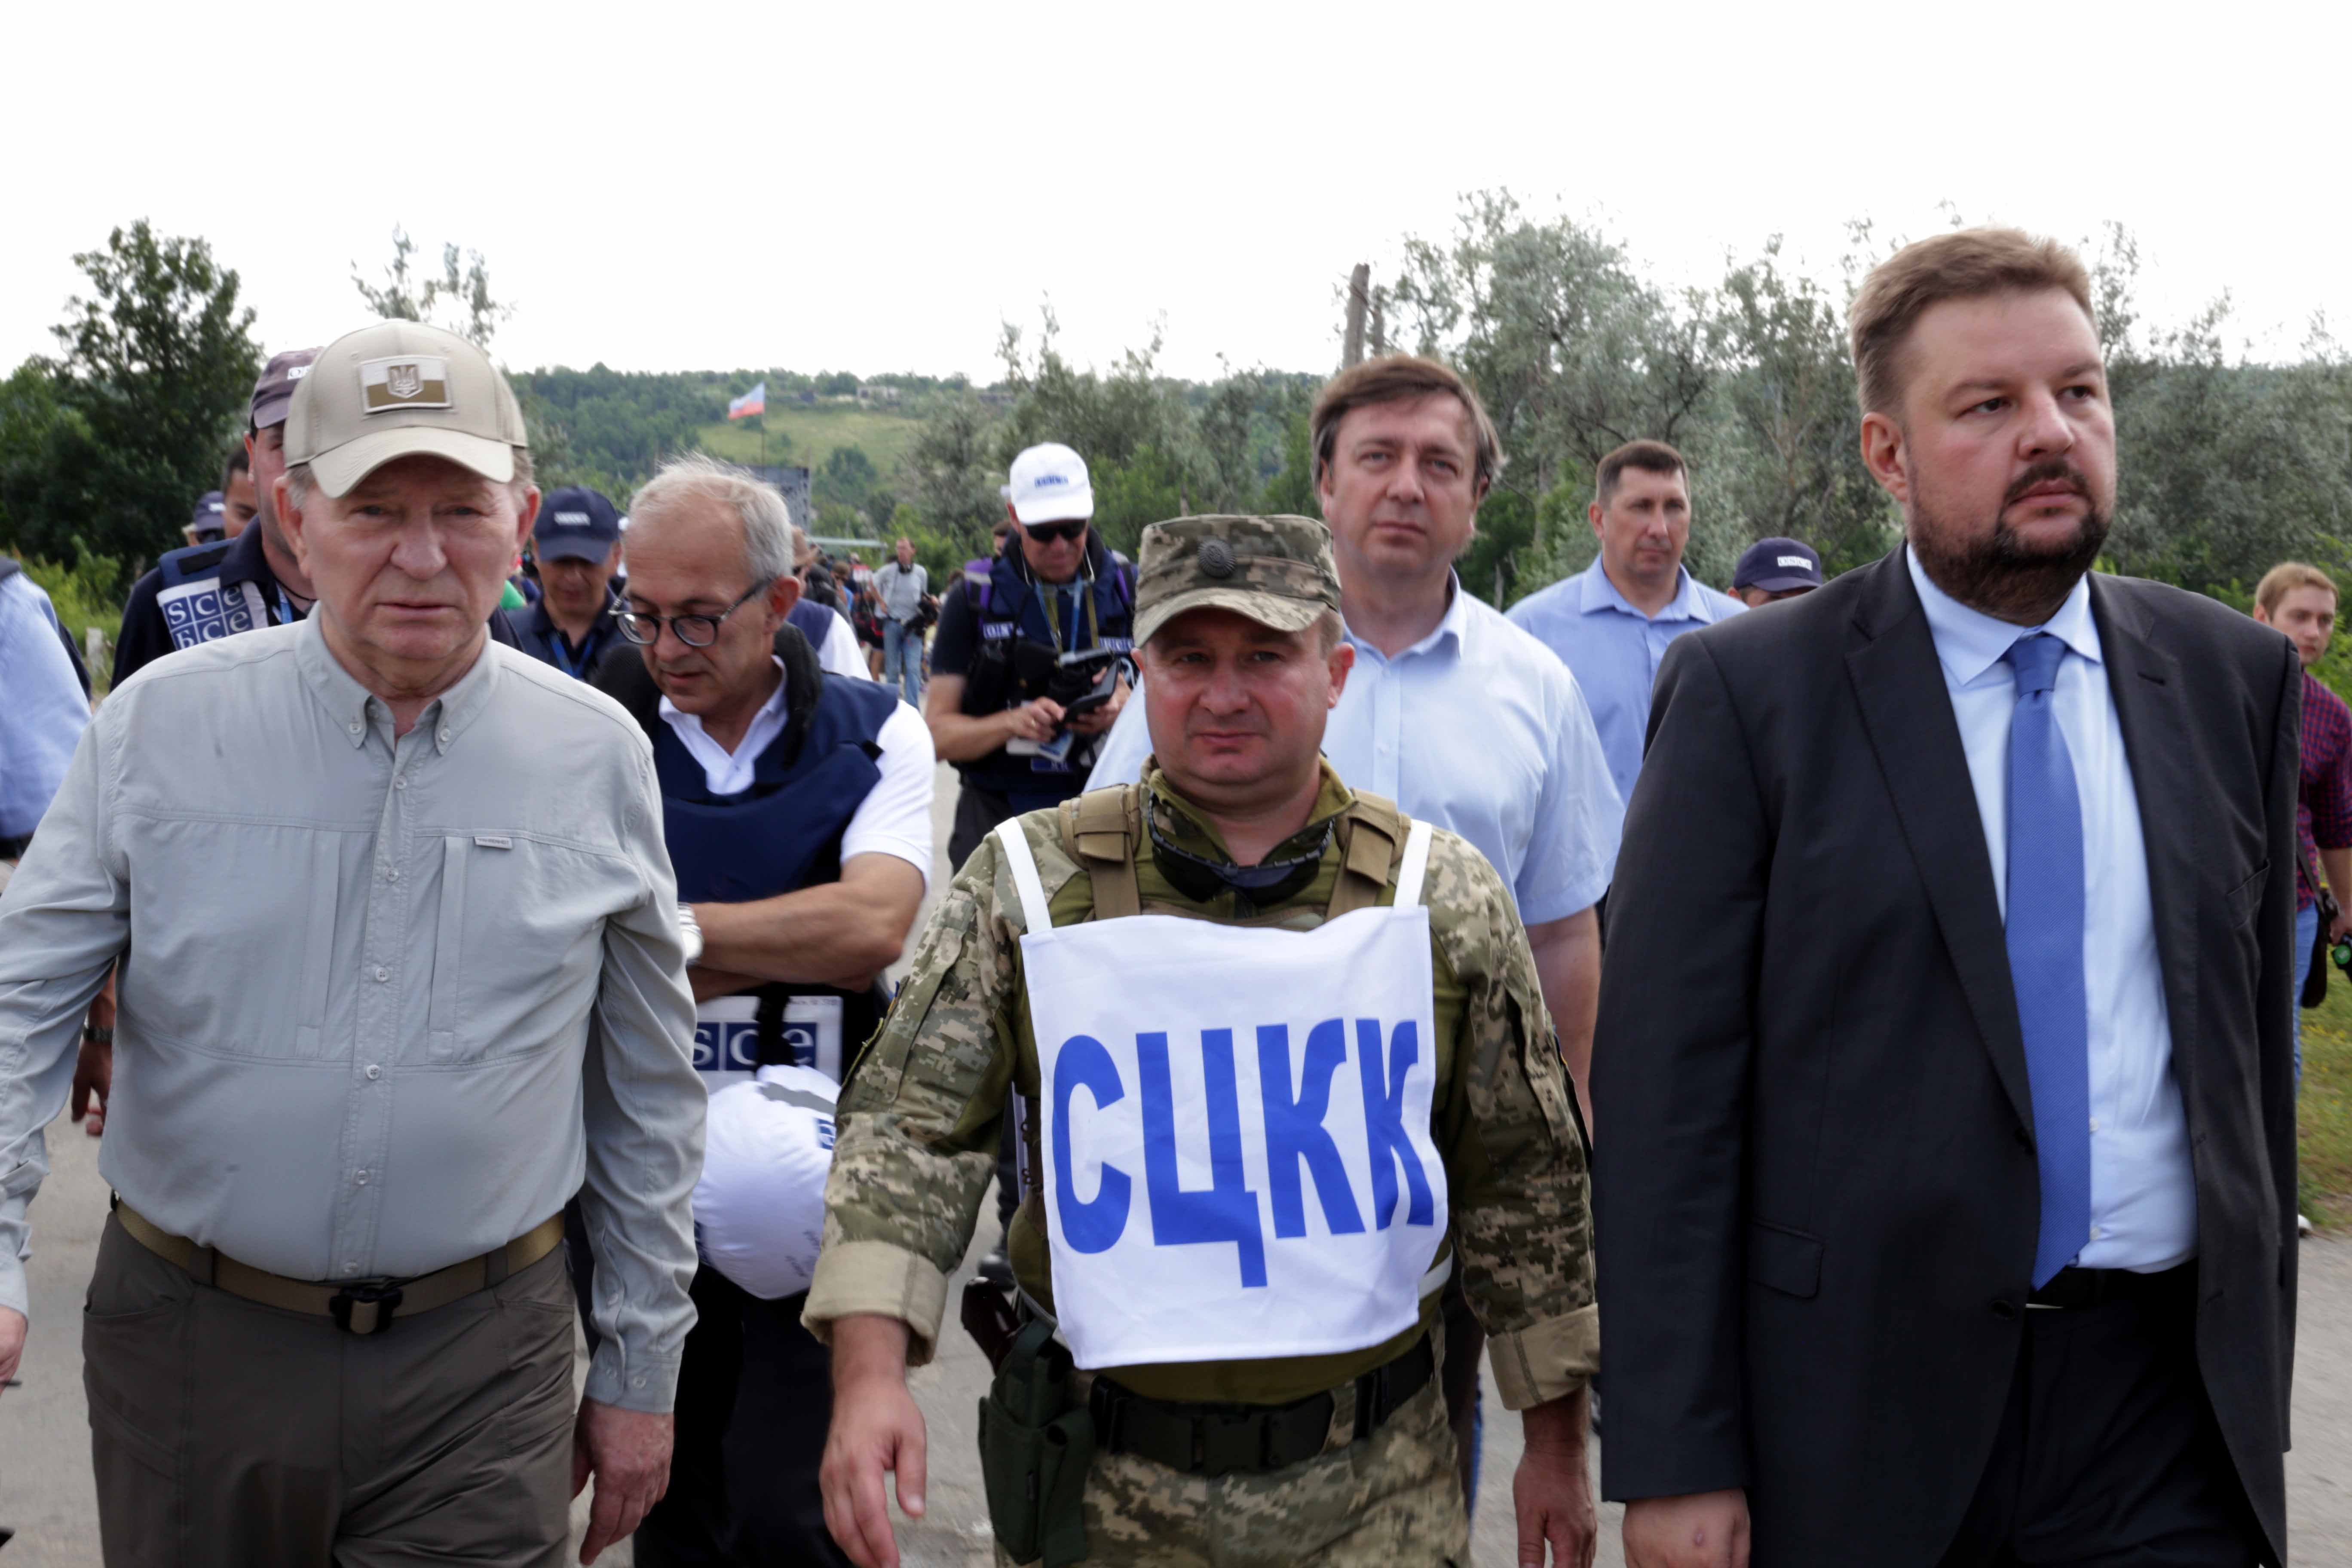 V. Zelensky habló sobre una 'frágil esperanza' en Donbas